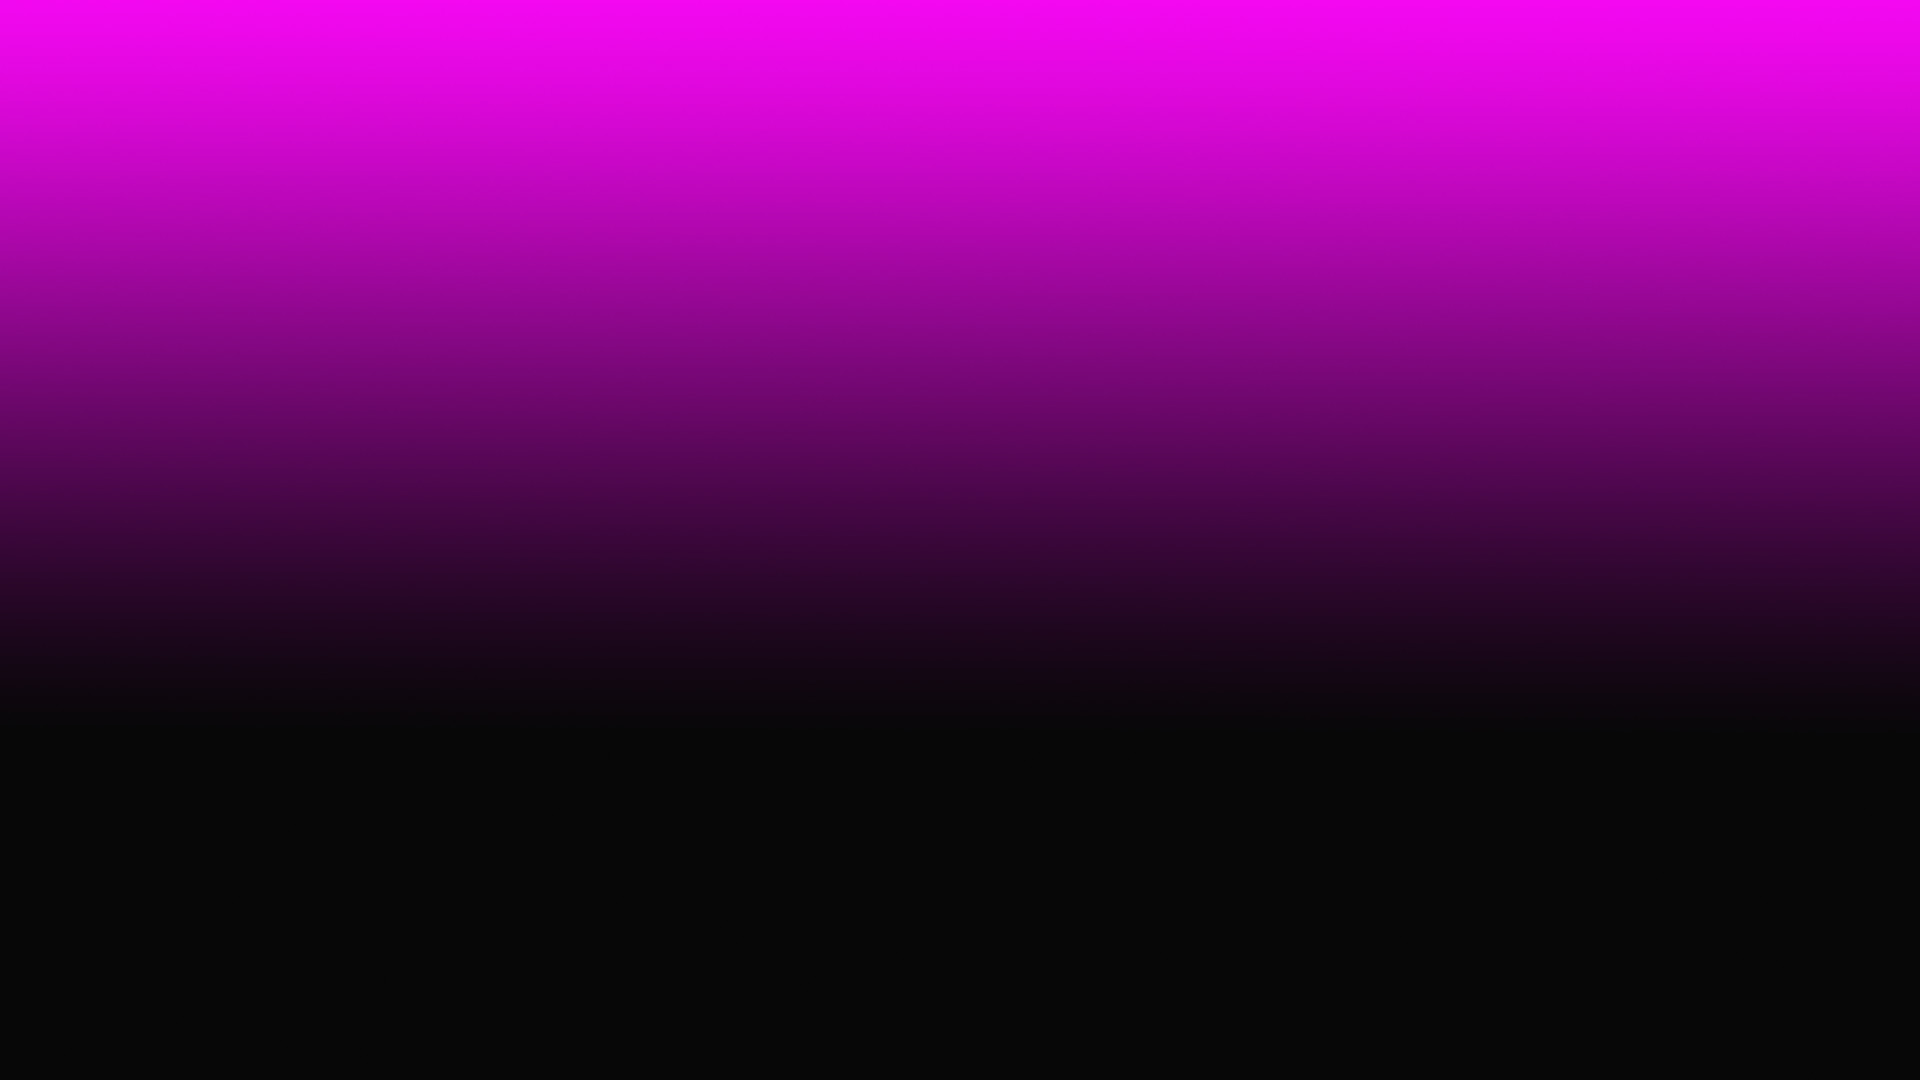 1920x1080 Pink-Black-Fading-Gradient-Desktop-Wallpaper